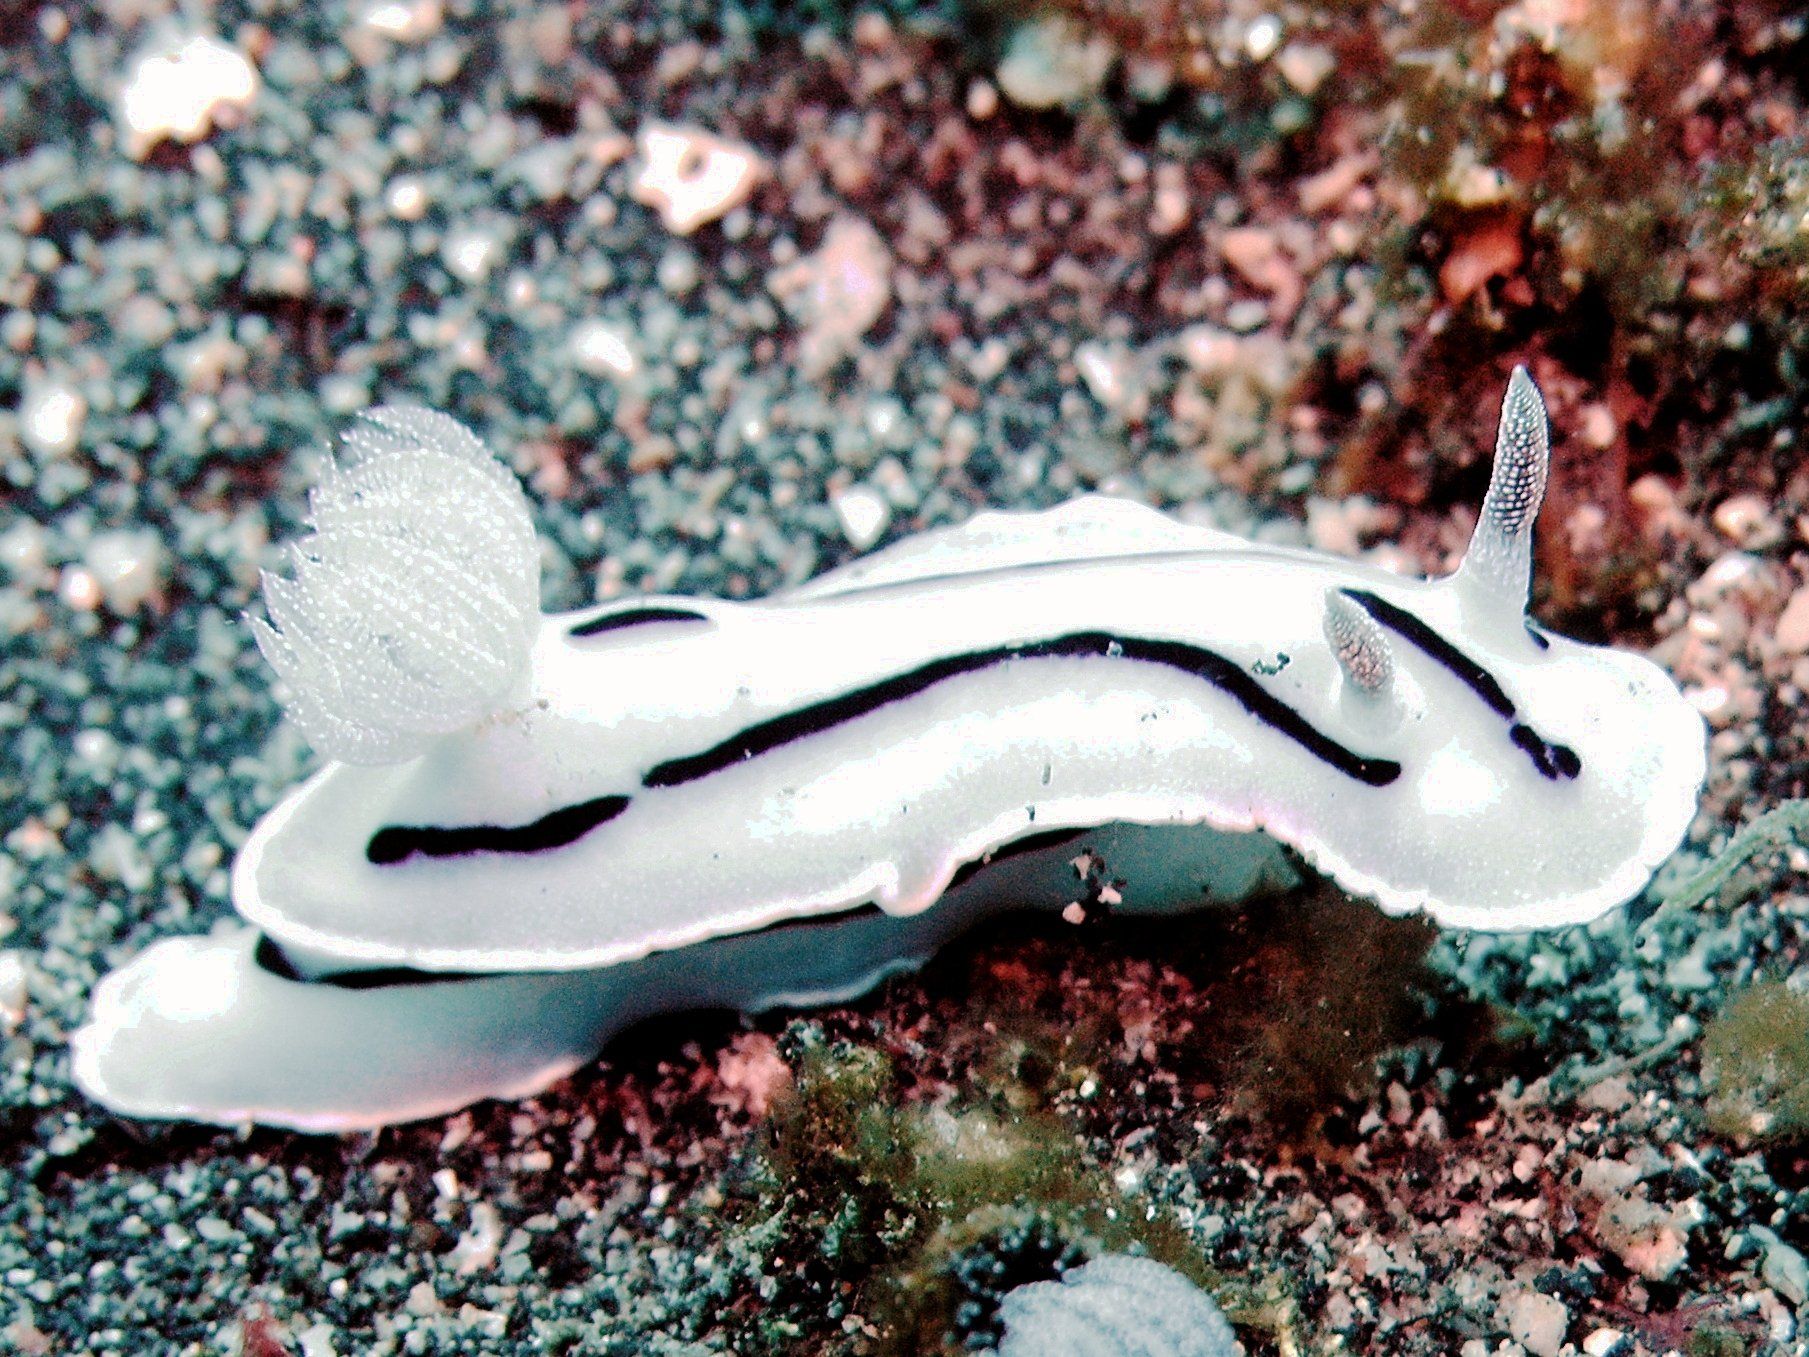 nudibranch seaslug Chromodoris_willani_Lembeh by Jens Petersen